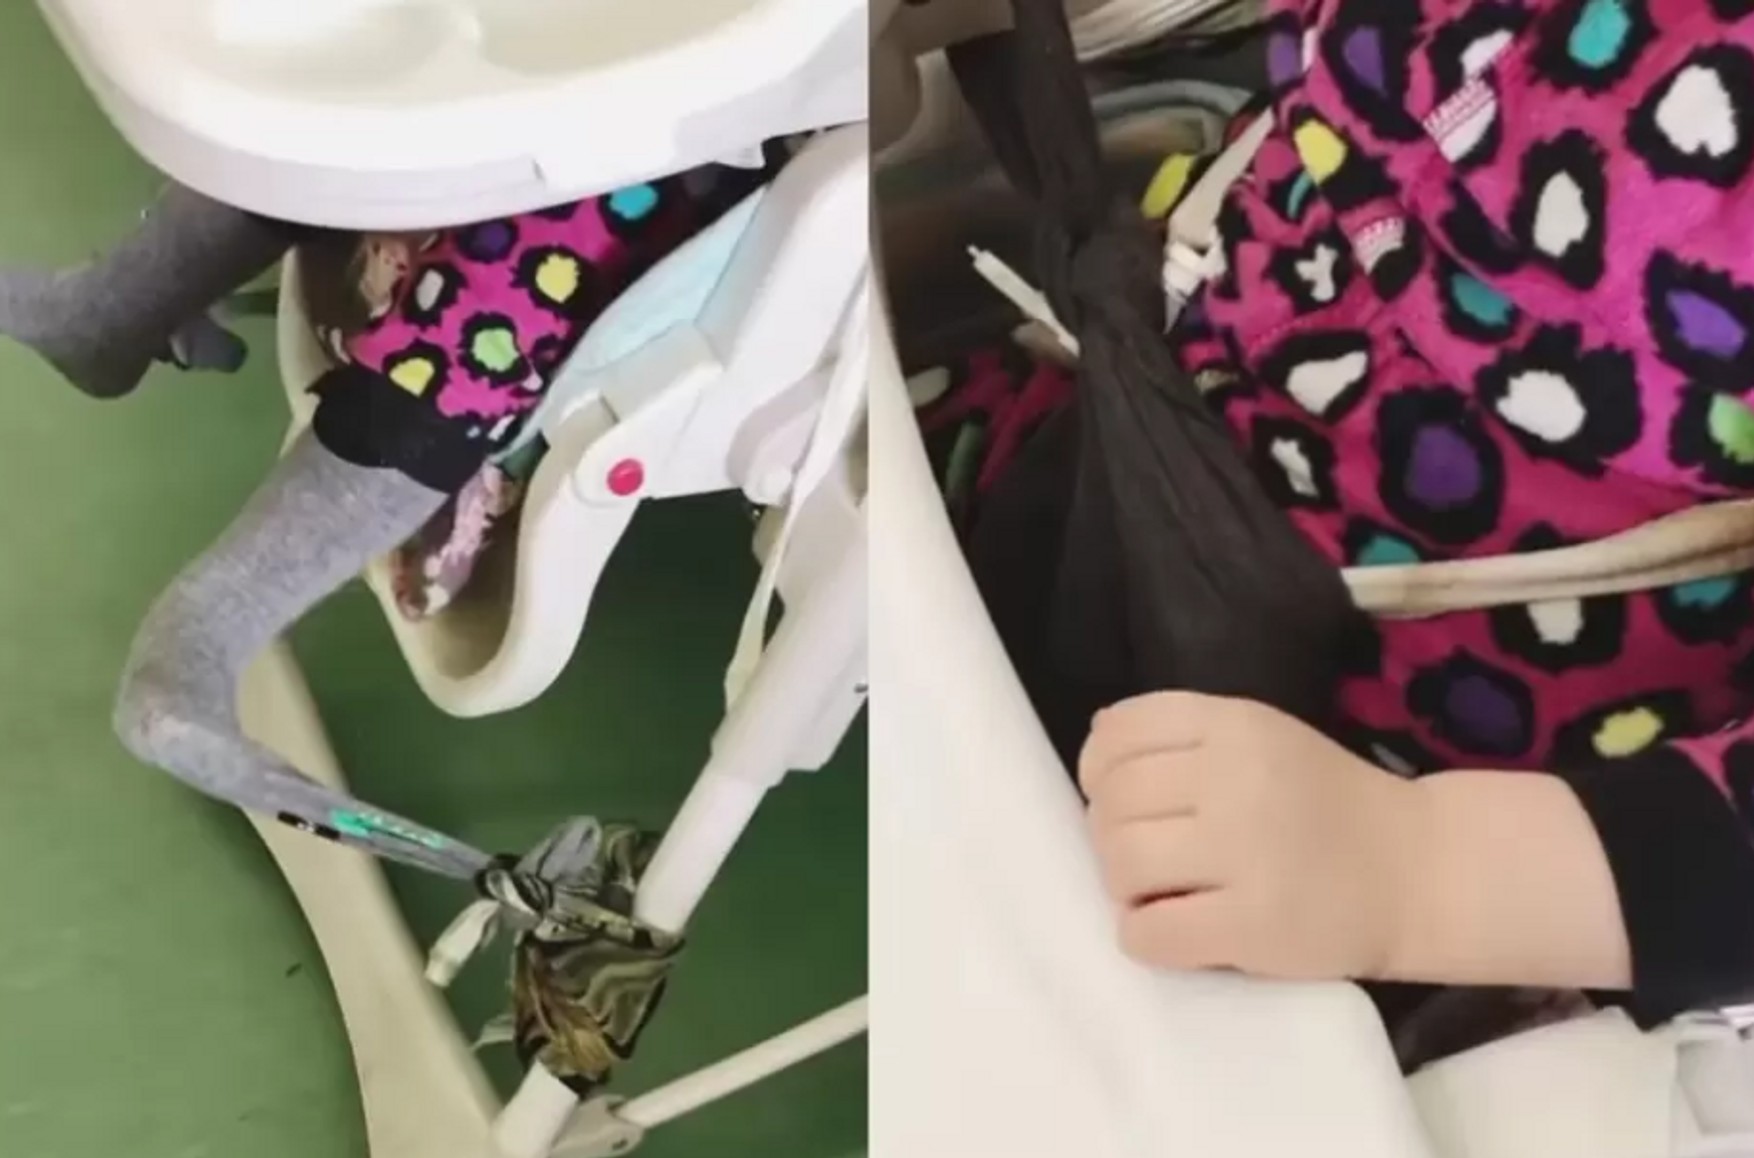 У петербурзької лікарні зняли відео з прив'язаним до стільця трирічним сиротою. СК РФ проводить перевірку